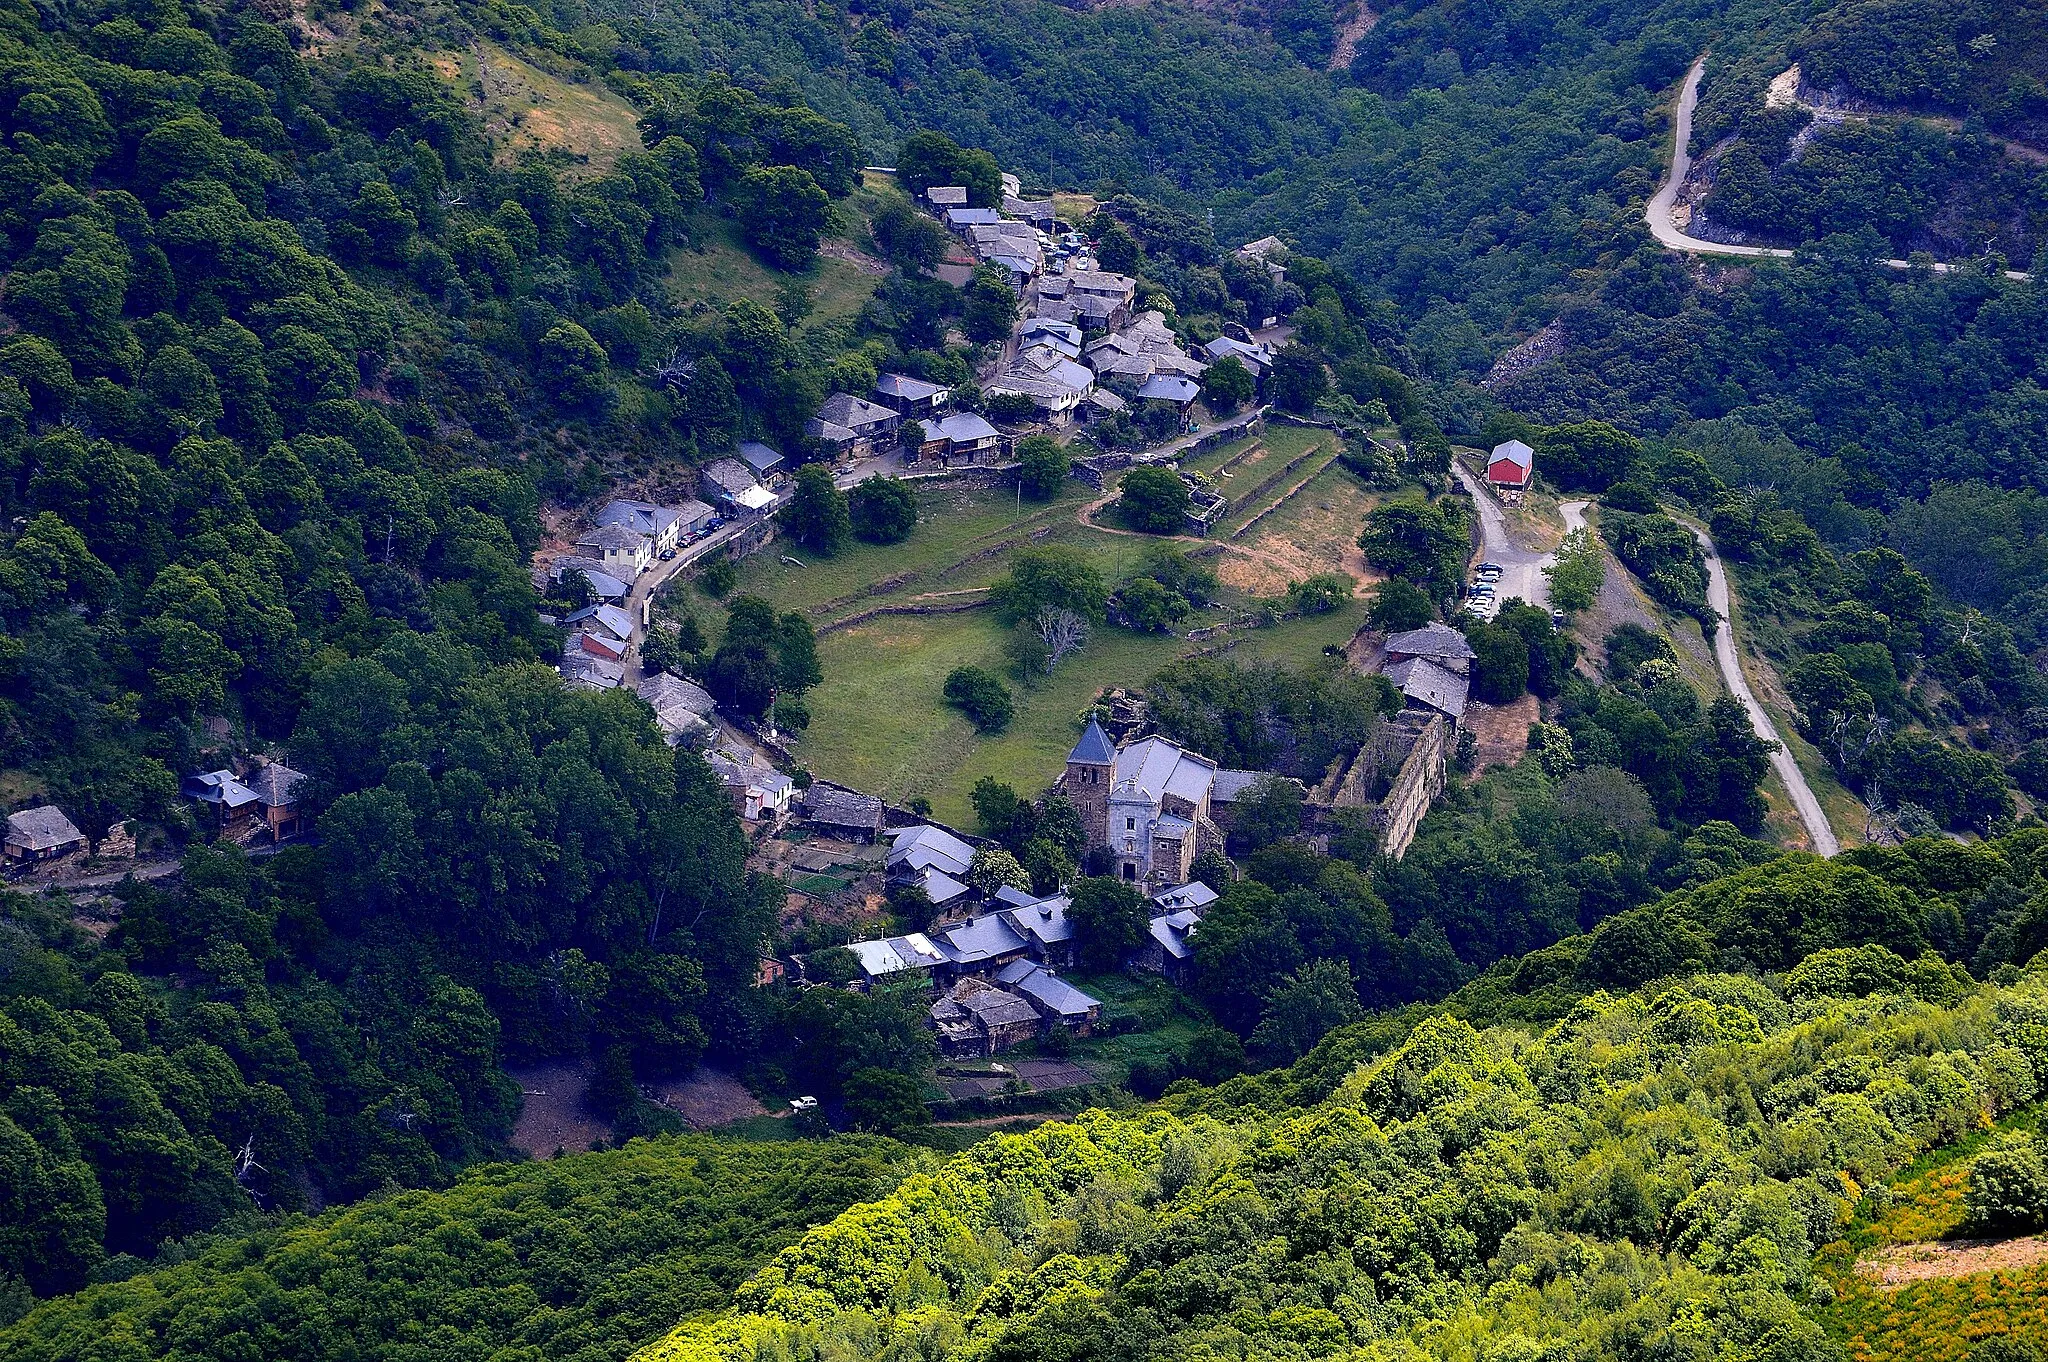 Photo showing: Desde el alto de la Aquina o Guiana a 1846 metros de altitud se disfruta de esta vista del pueblo de Montes de Valdueza o San pedro de Montes.
Construido en la ladera alrededor del Monasterio que ocupa la parte llana del pueblo.